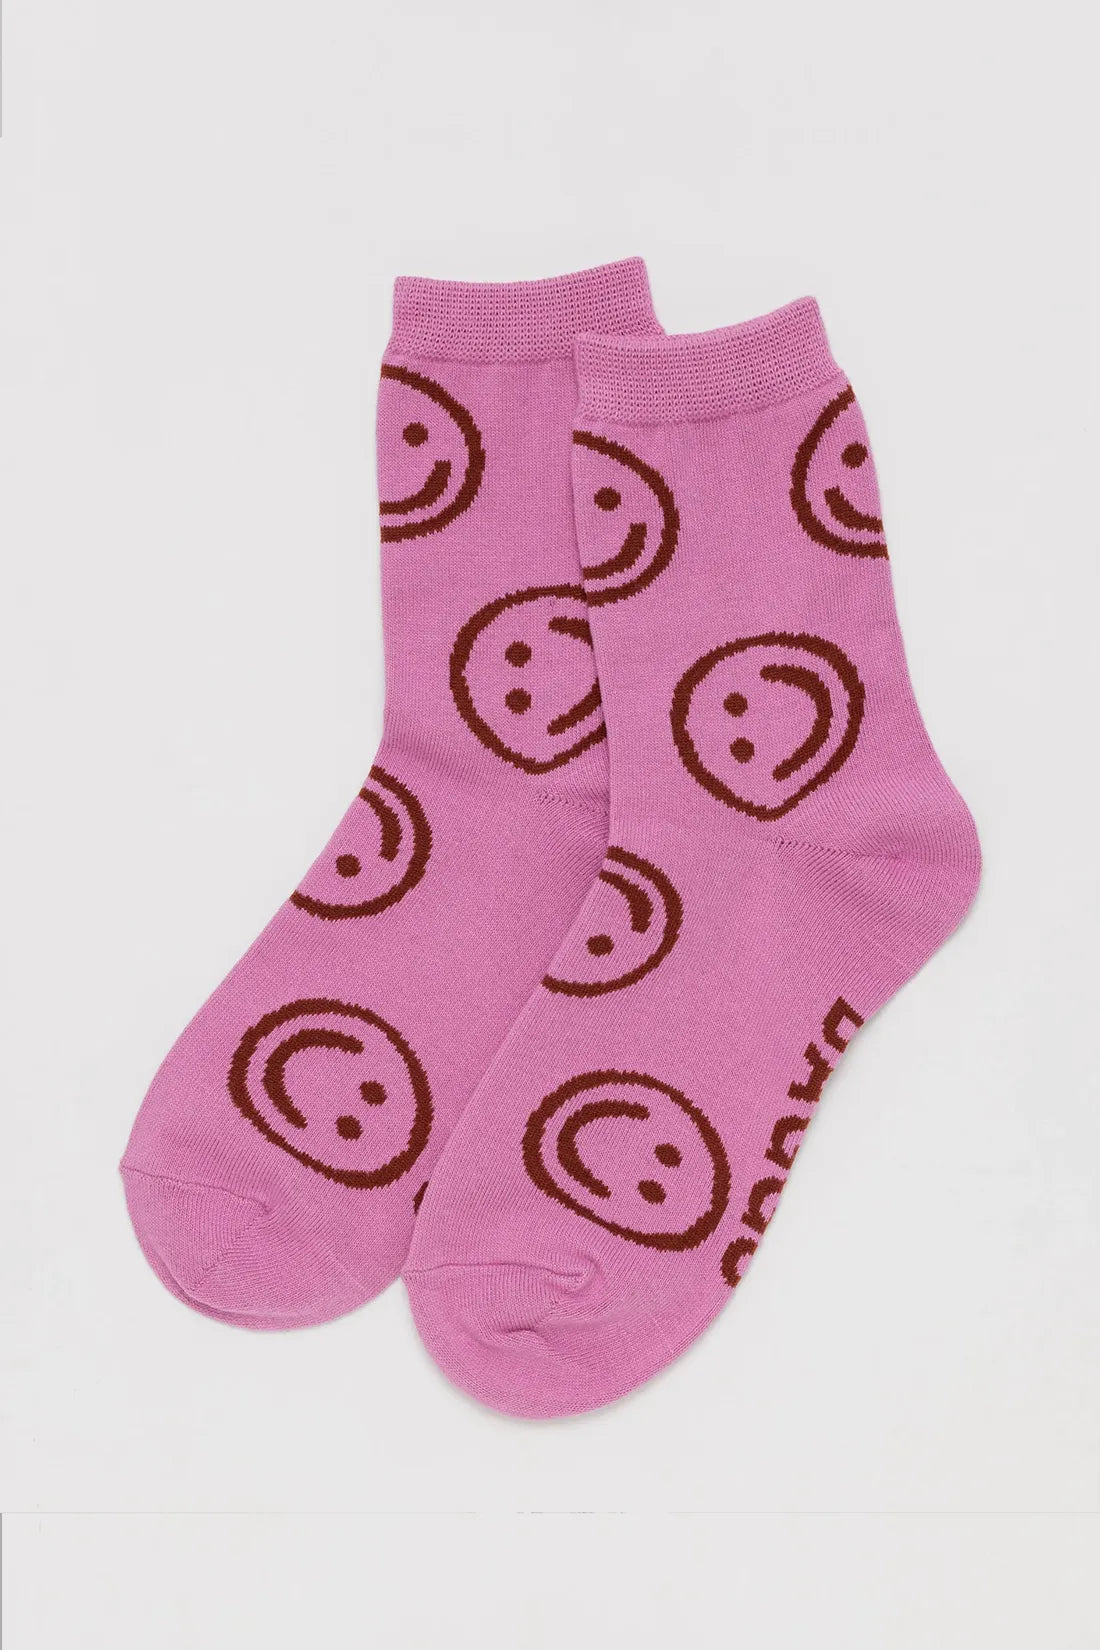 Crew Sock - Pink Happy